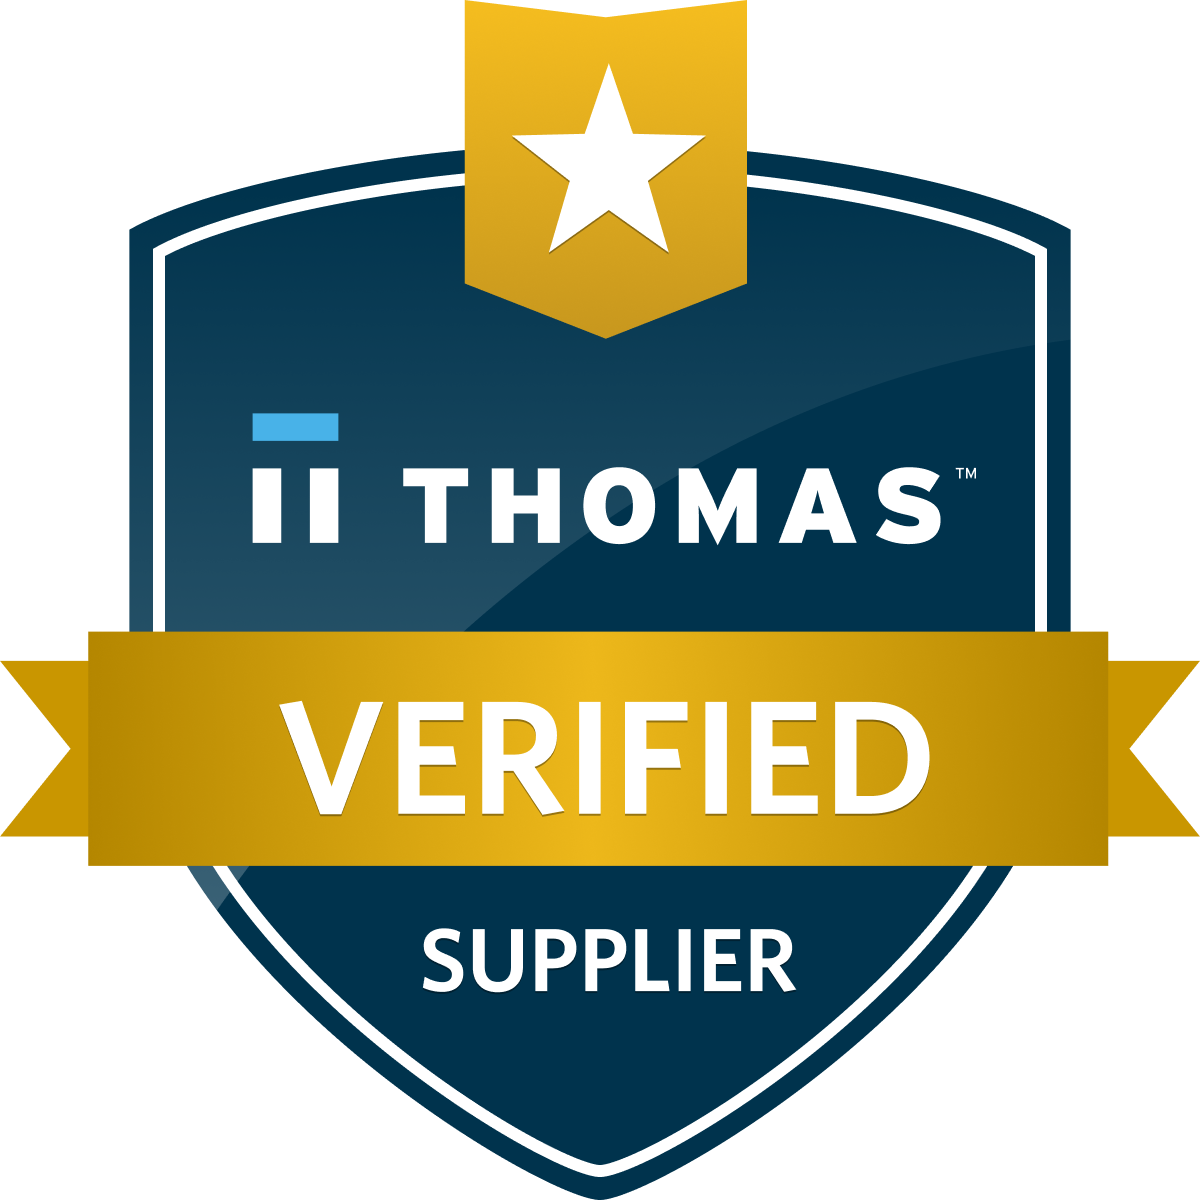 Thomas Verified logo